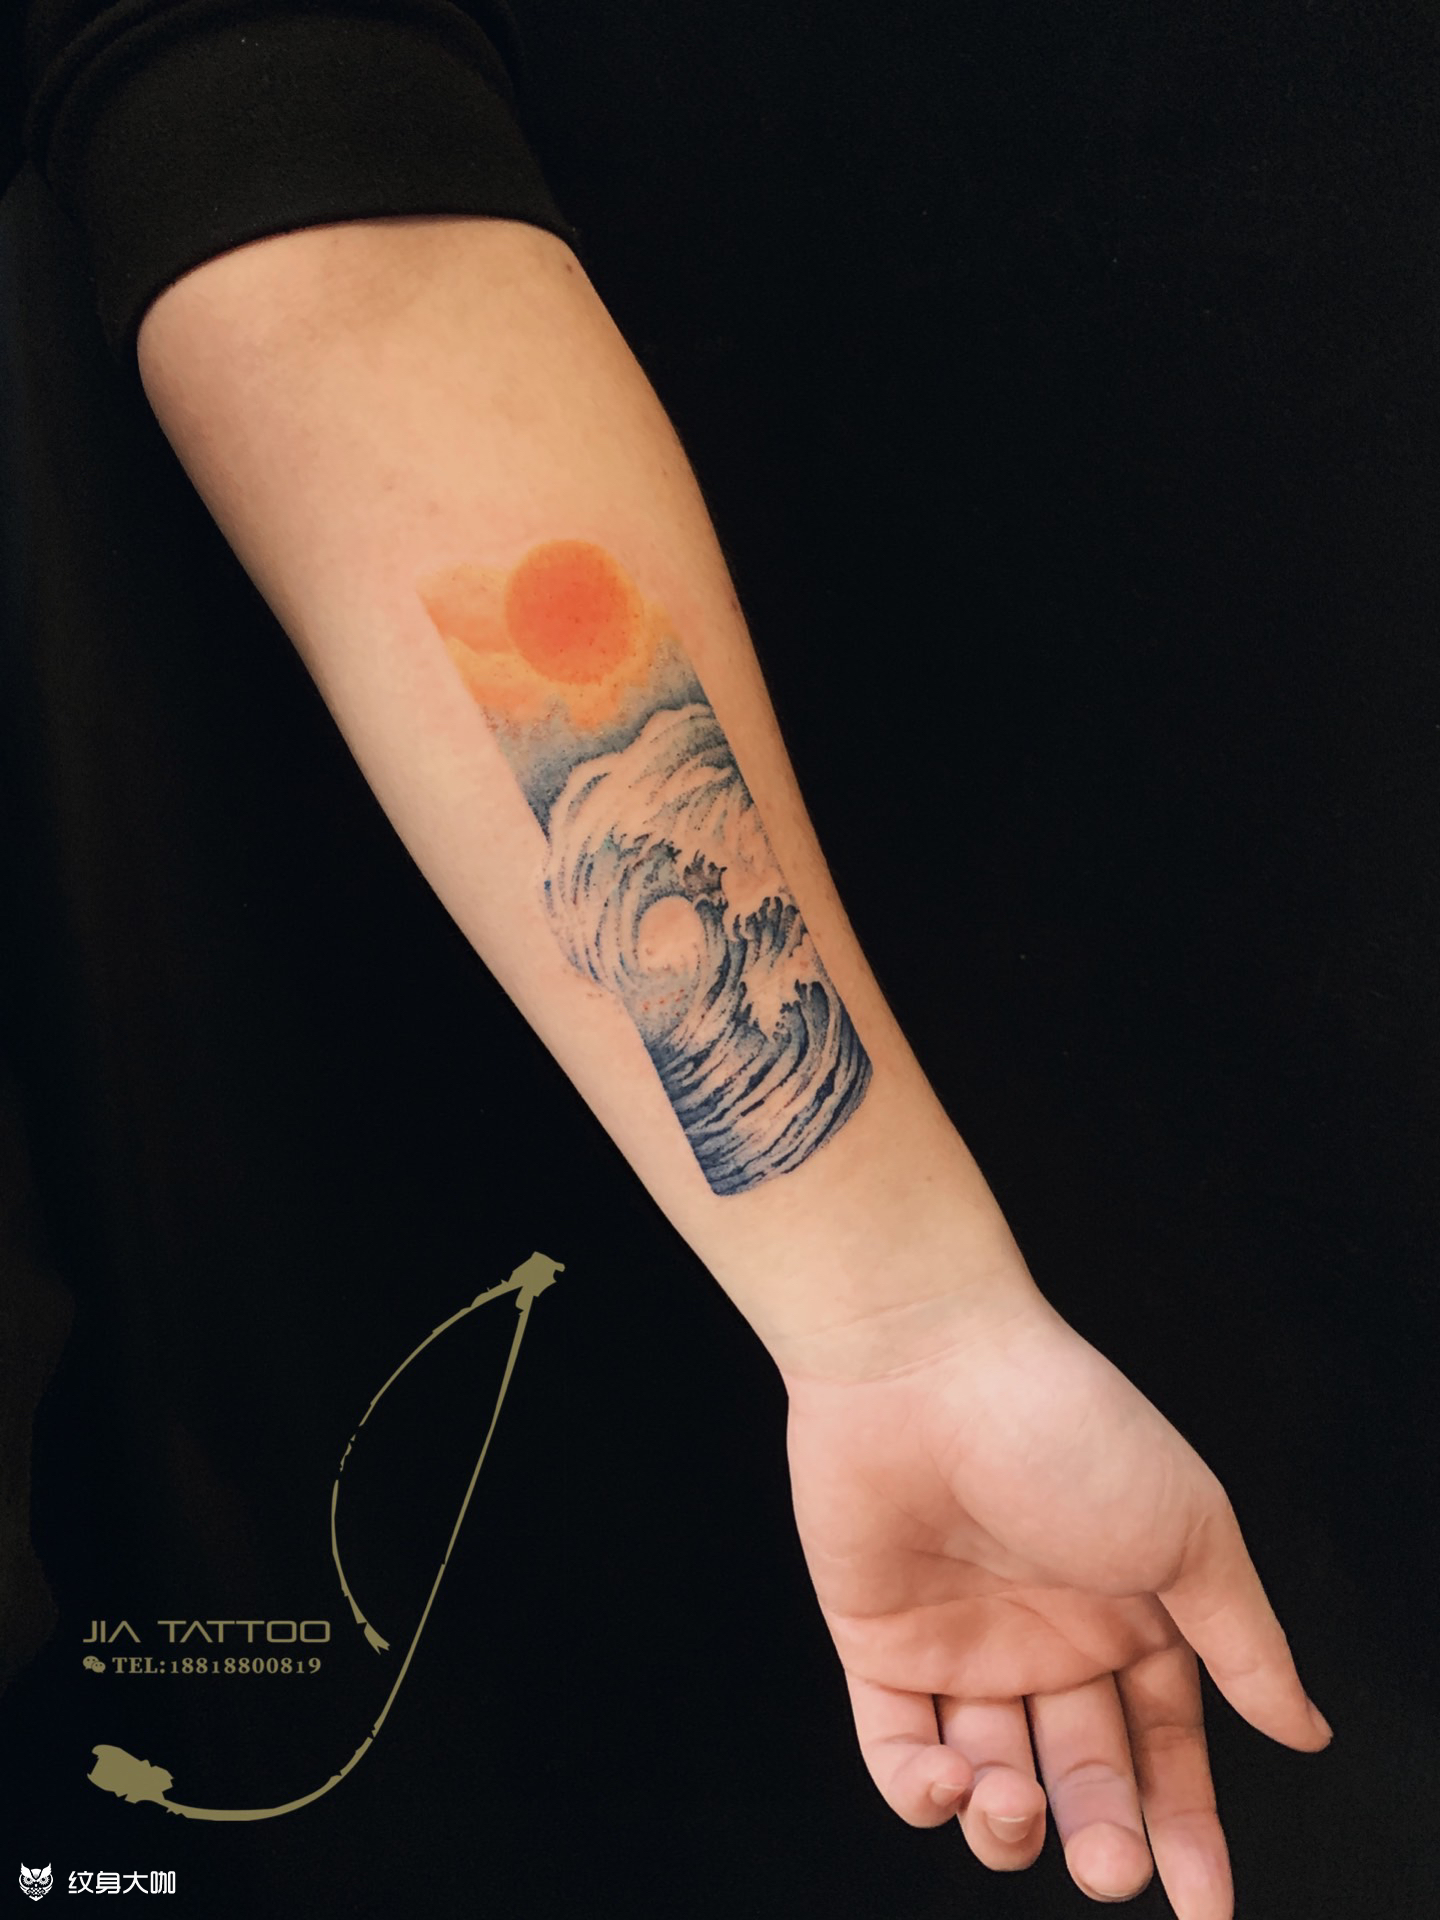 大海_纹身图案手稿图片_jia tattoo的纹身作品集